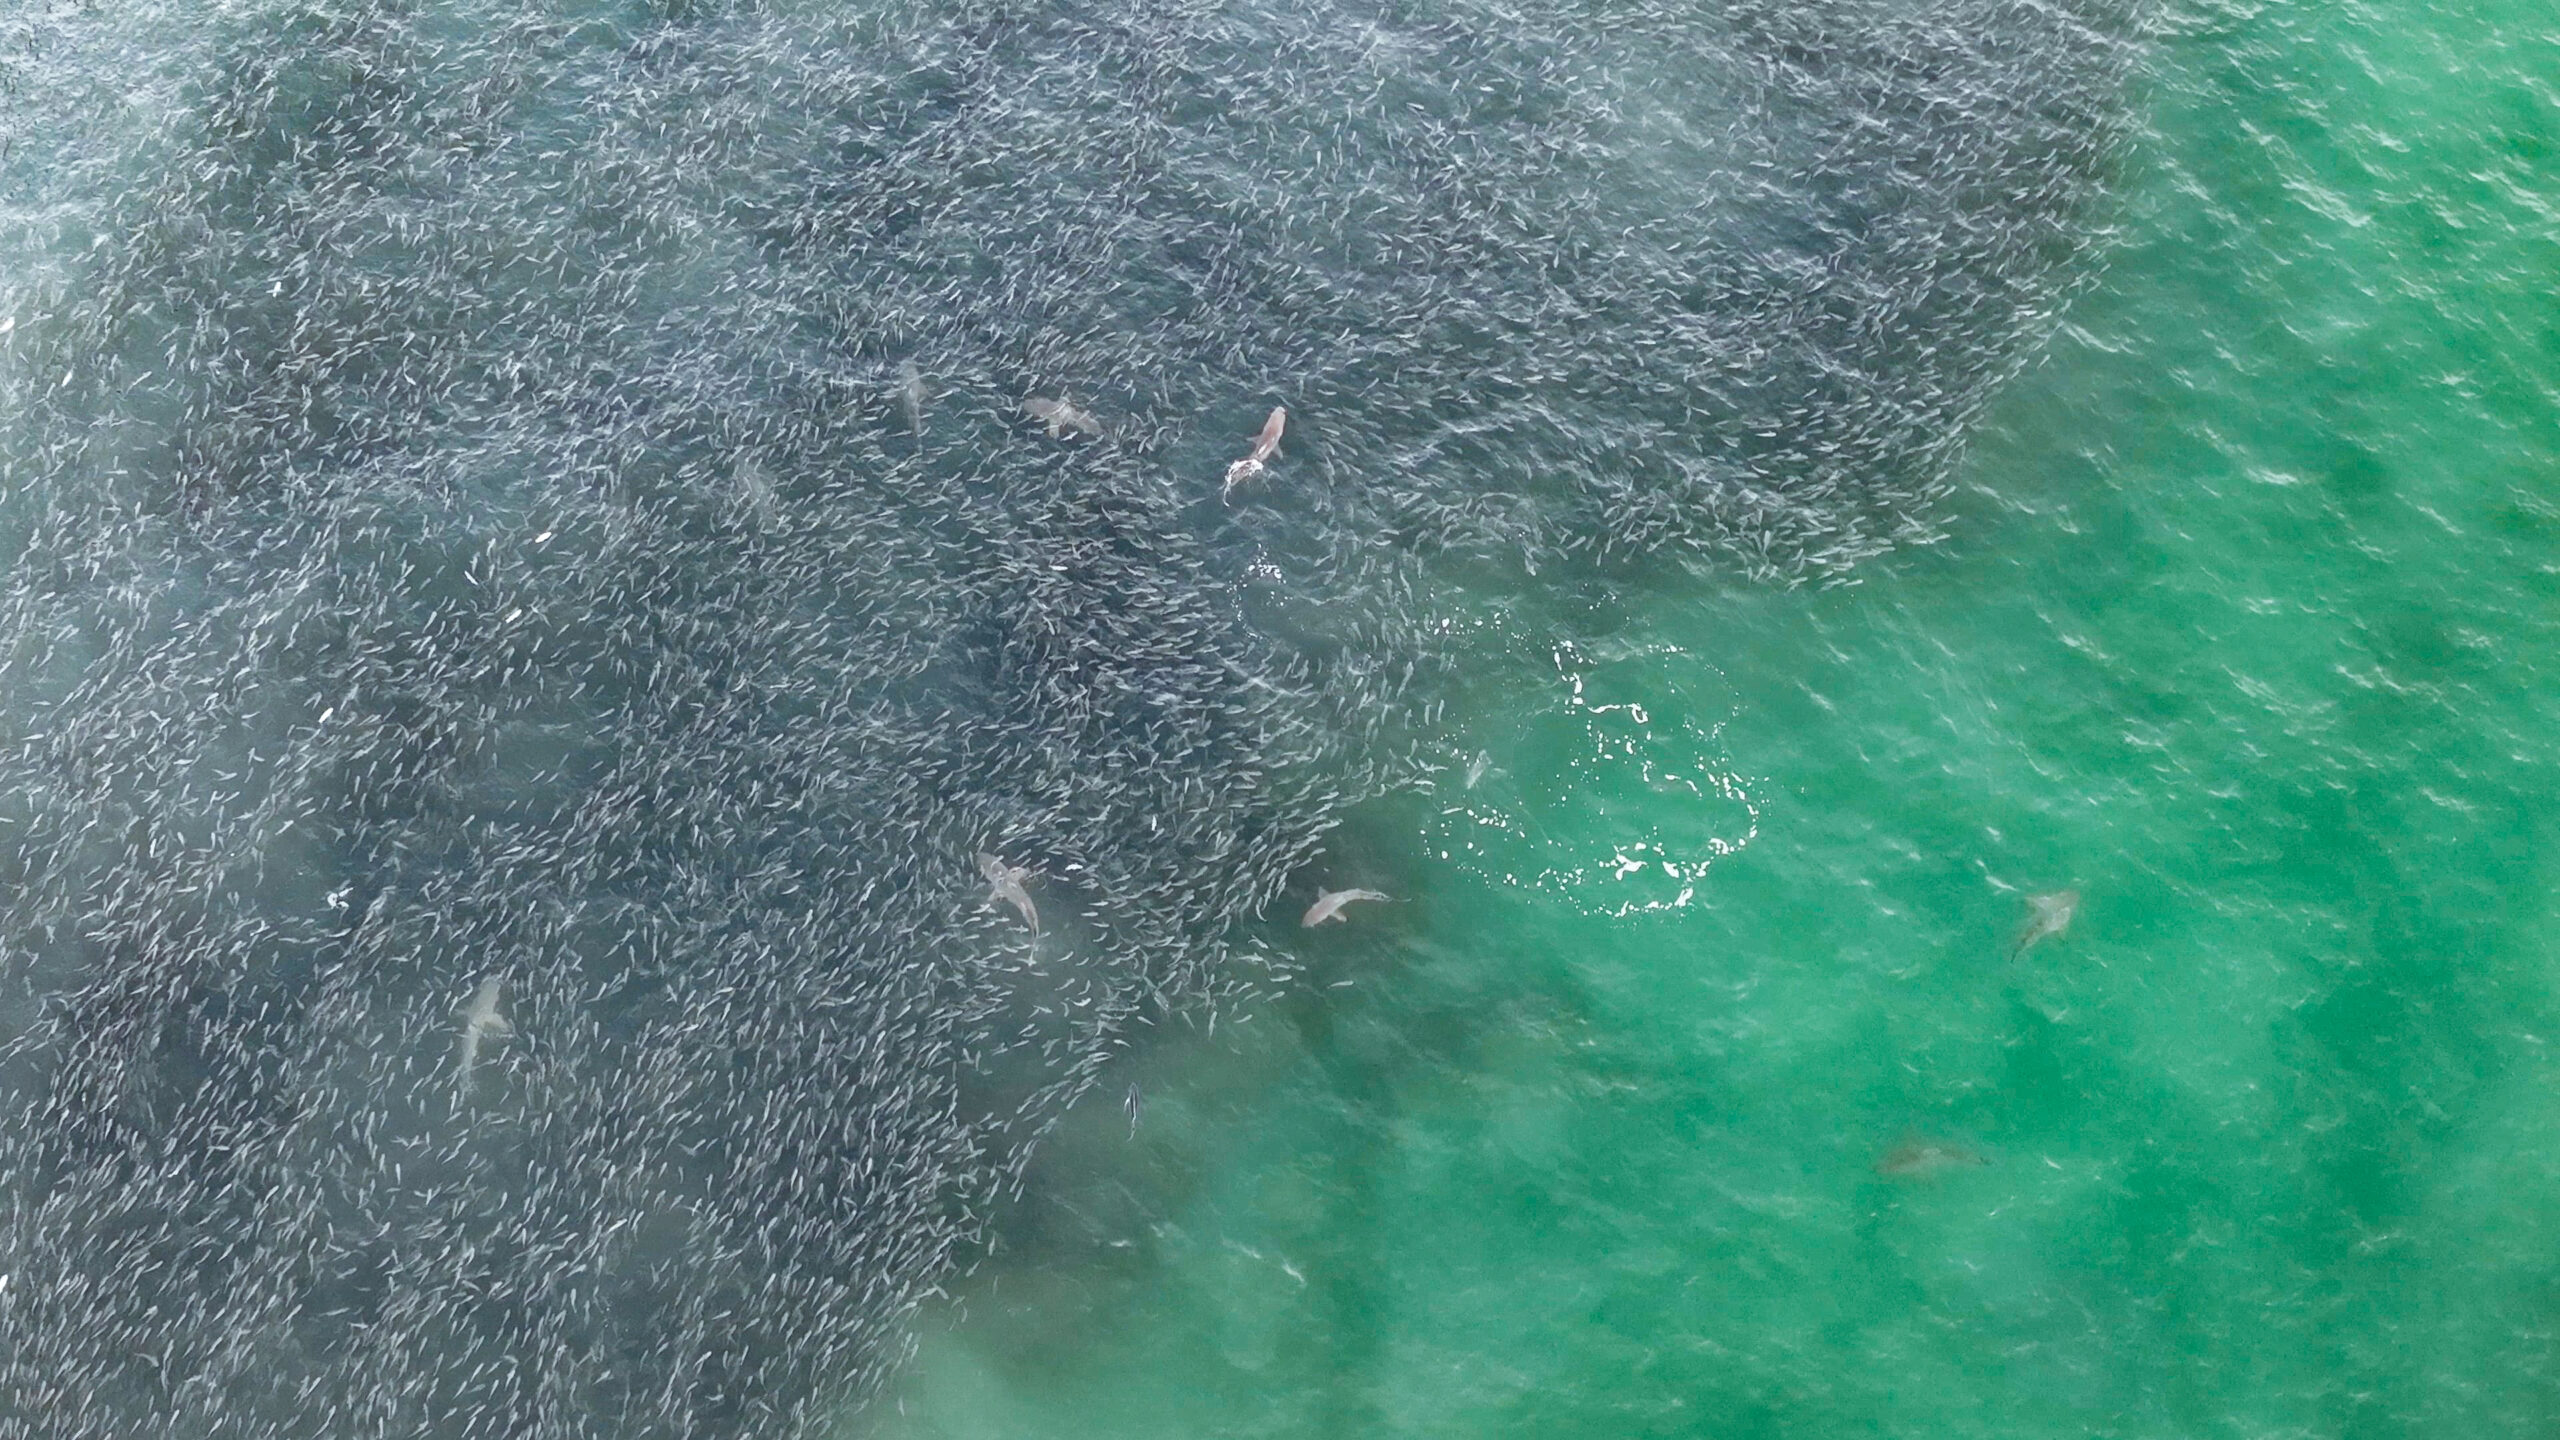 A feeding frenzy of blacktip sharks feast on a mullet run.